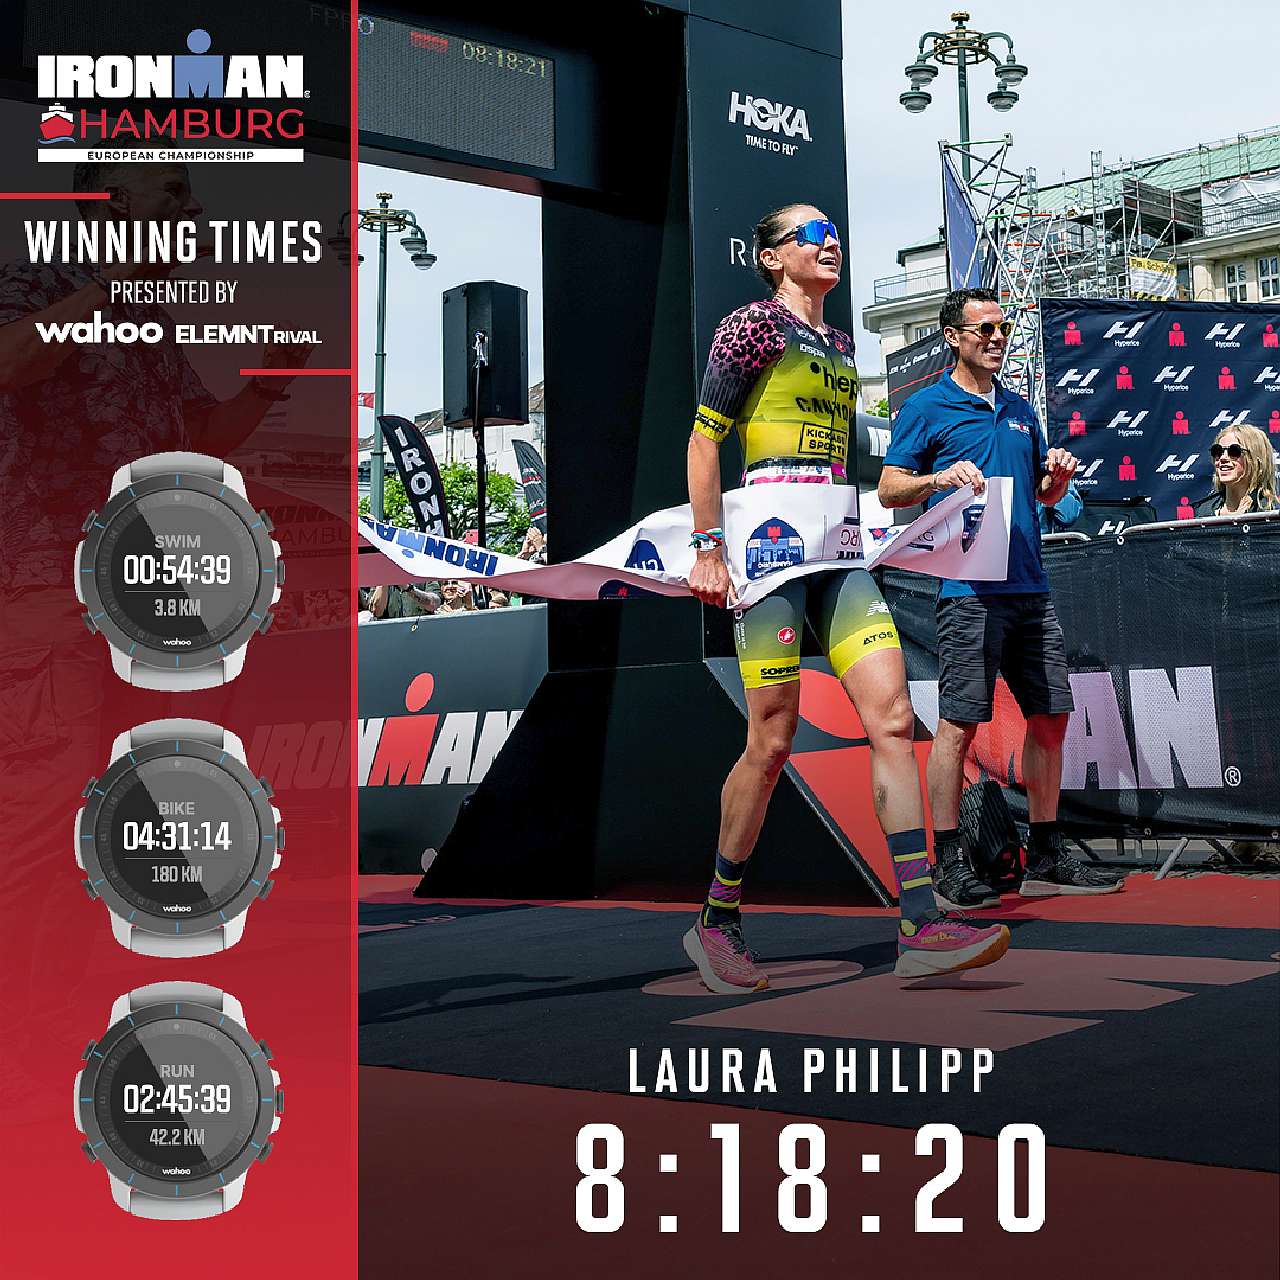 Laura Philipp vince l'Ironman Hamburg 2022, valido come European Championship per le PRO